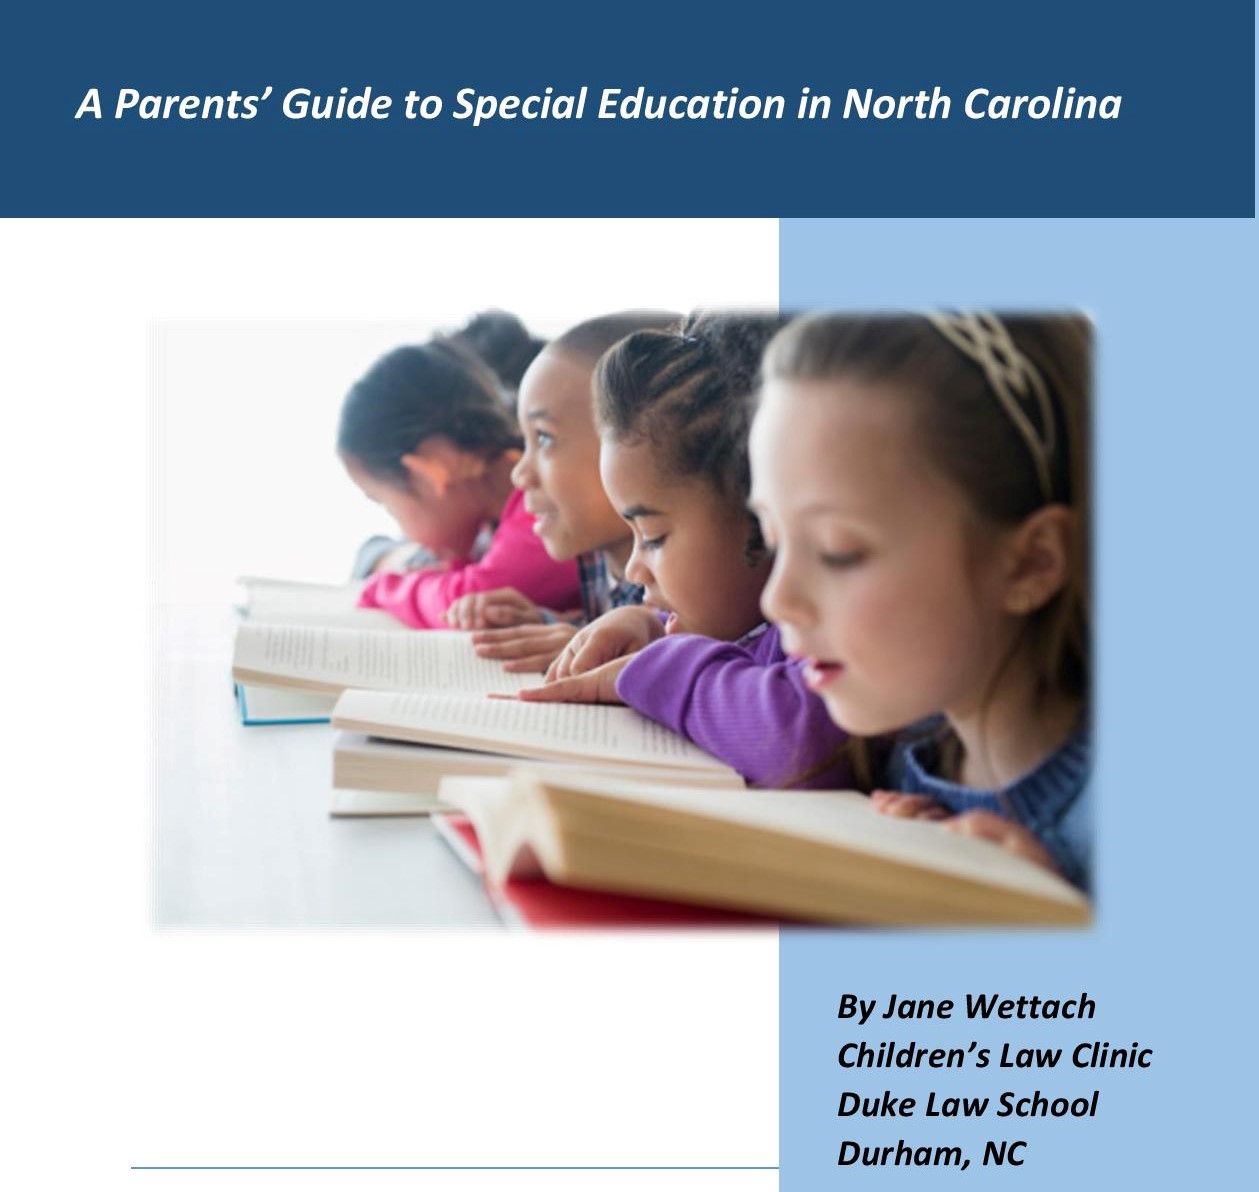 Bild von lesenden Kindern mit der Aufschrift A Parents' Guide to Special Education in North Carolina